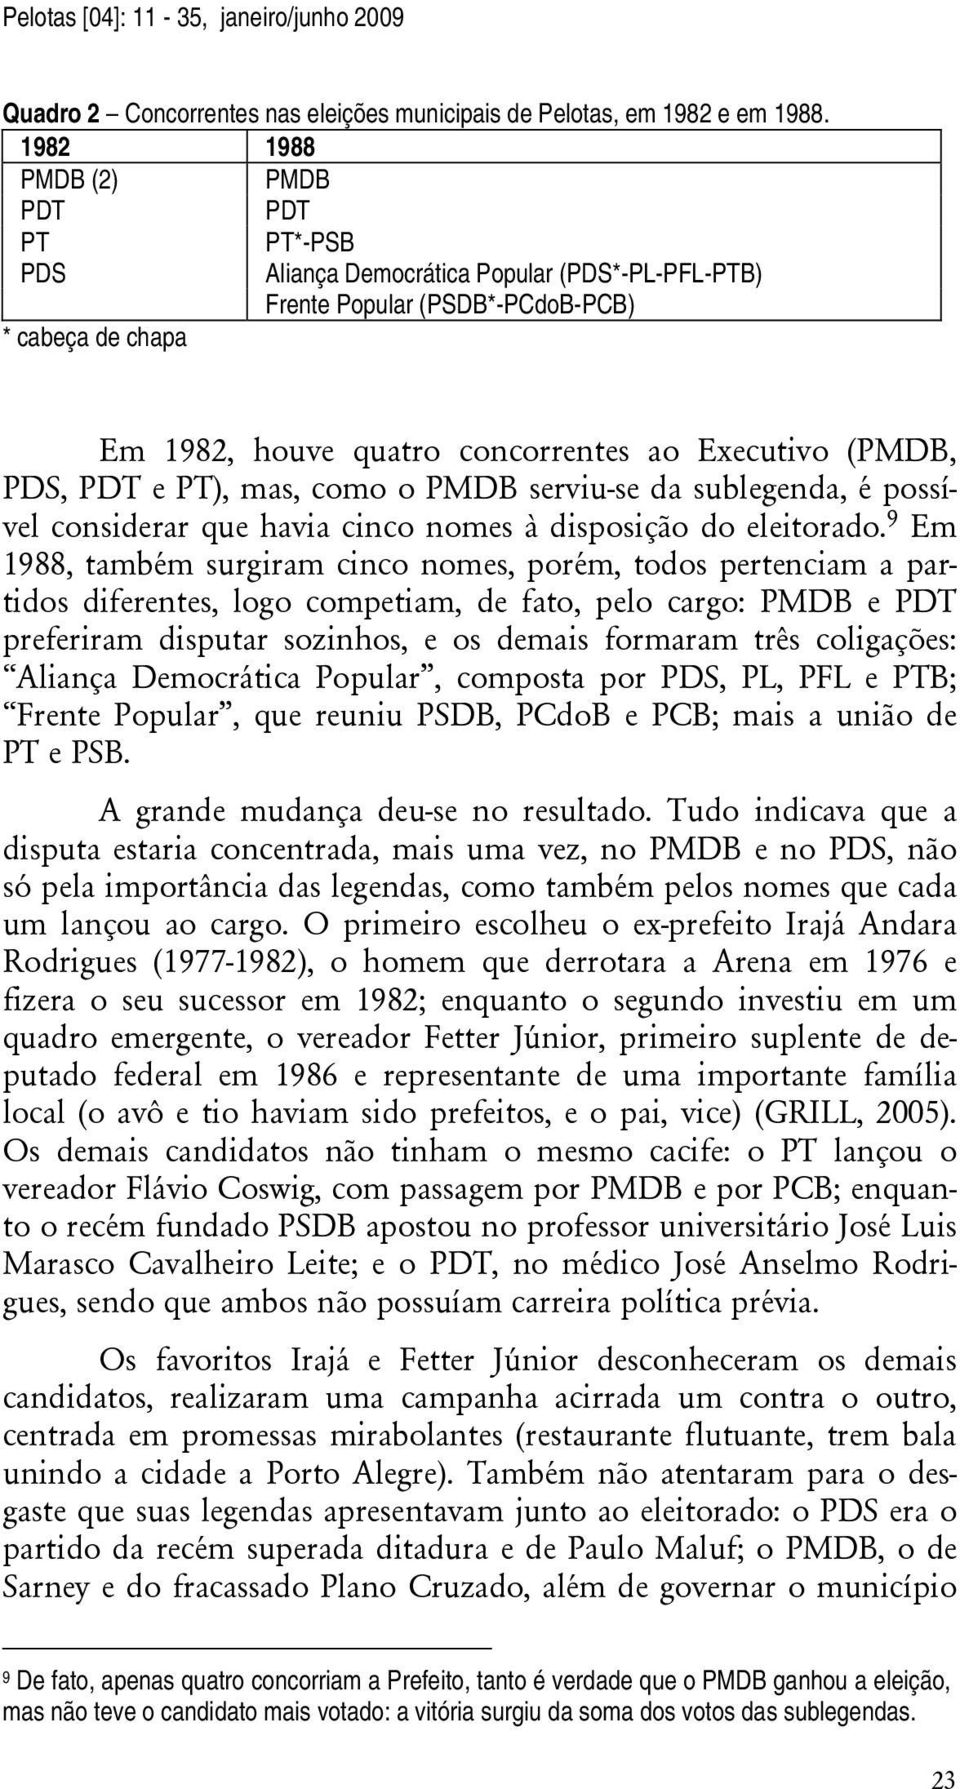 PDS, PDT e PT), mas, como o PMDB serviu-se da sublegenda, é possível considerar que havia cinco nomes à disposição do eleitorado.